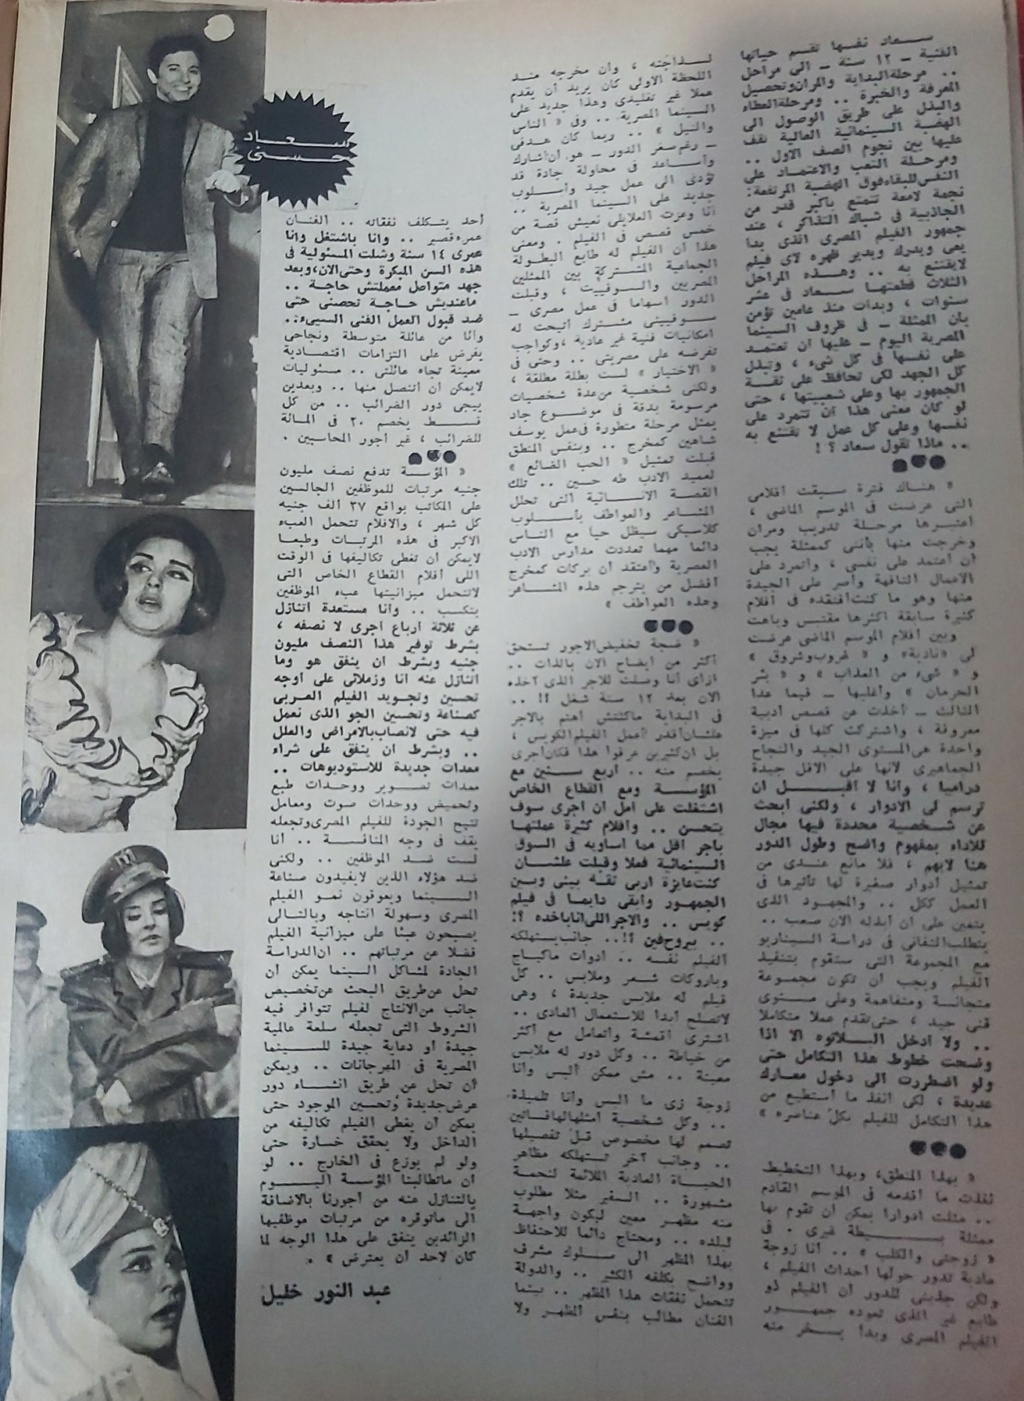 حوار صحفي : سعاد حسني .. تمردت حتى على نفسي ! 1977 م 228